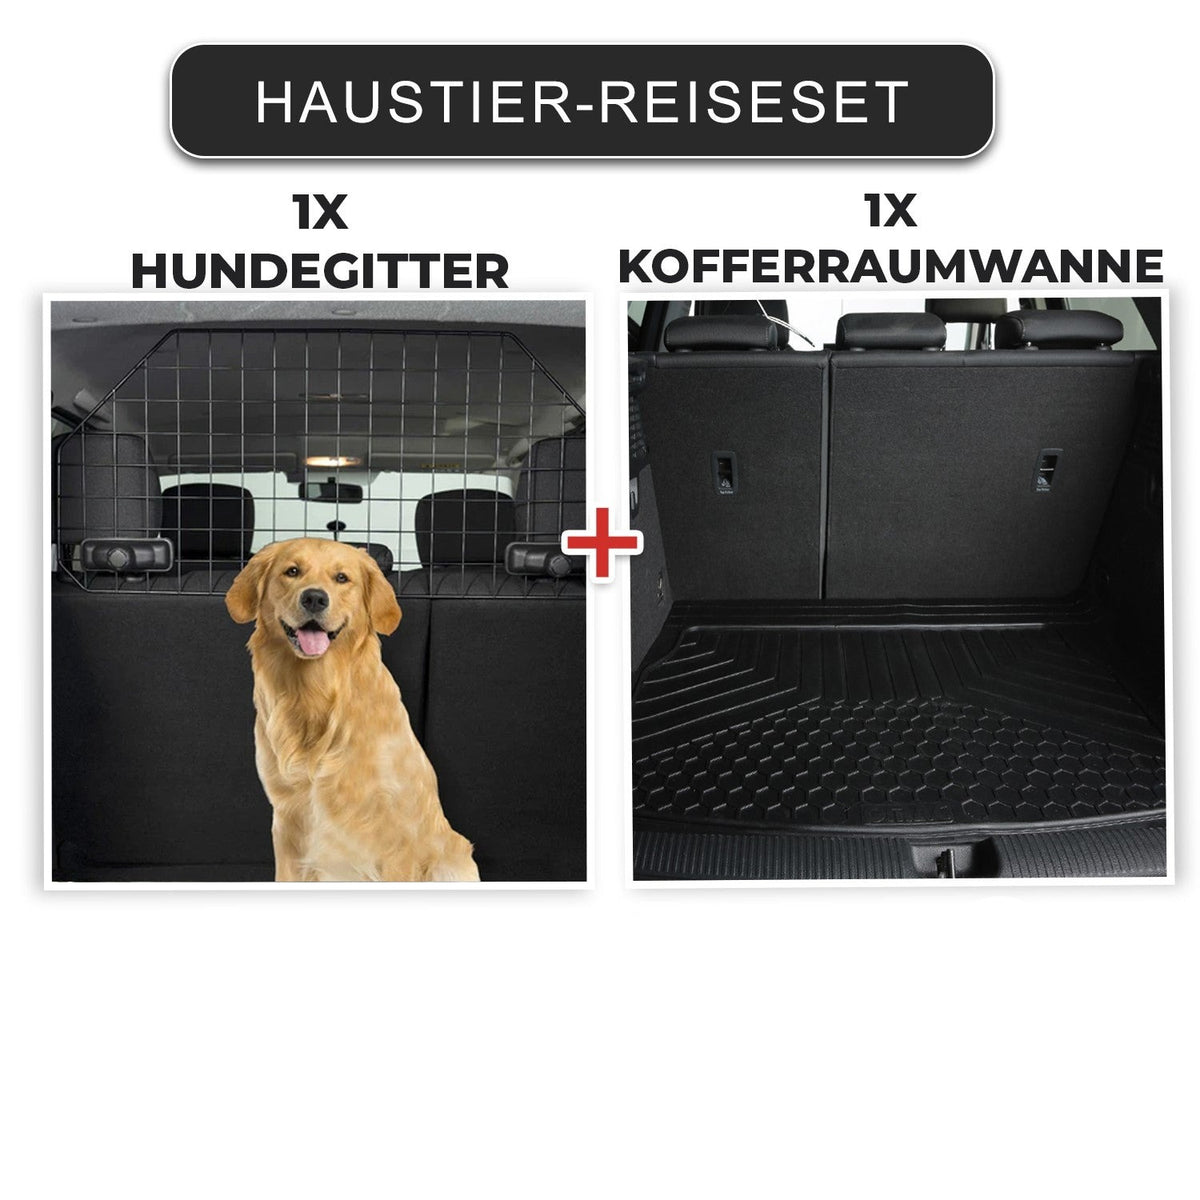 Haustier-Reiseset Kofferraumwanne Hundegitter Universal Gummi Auto Schwarz